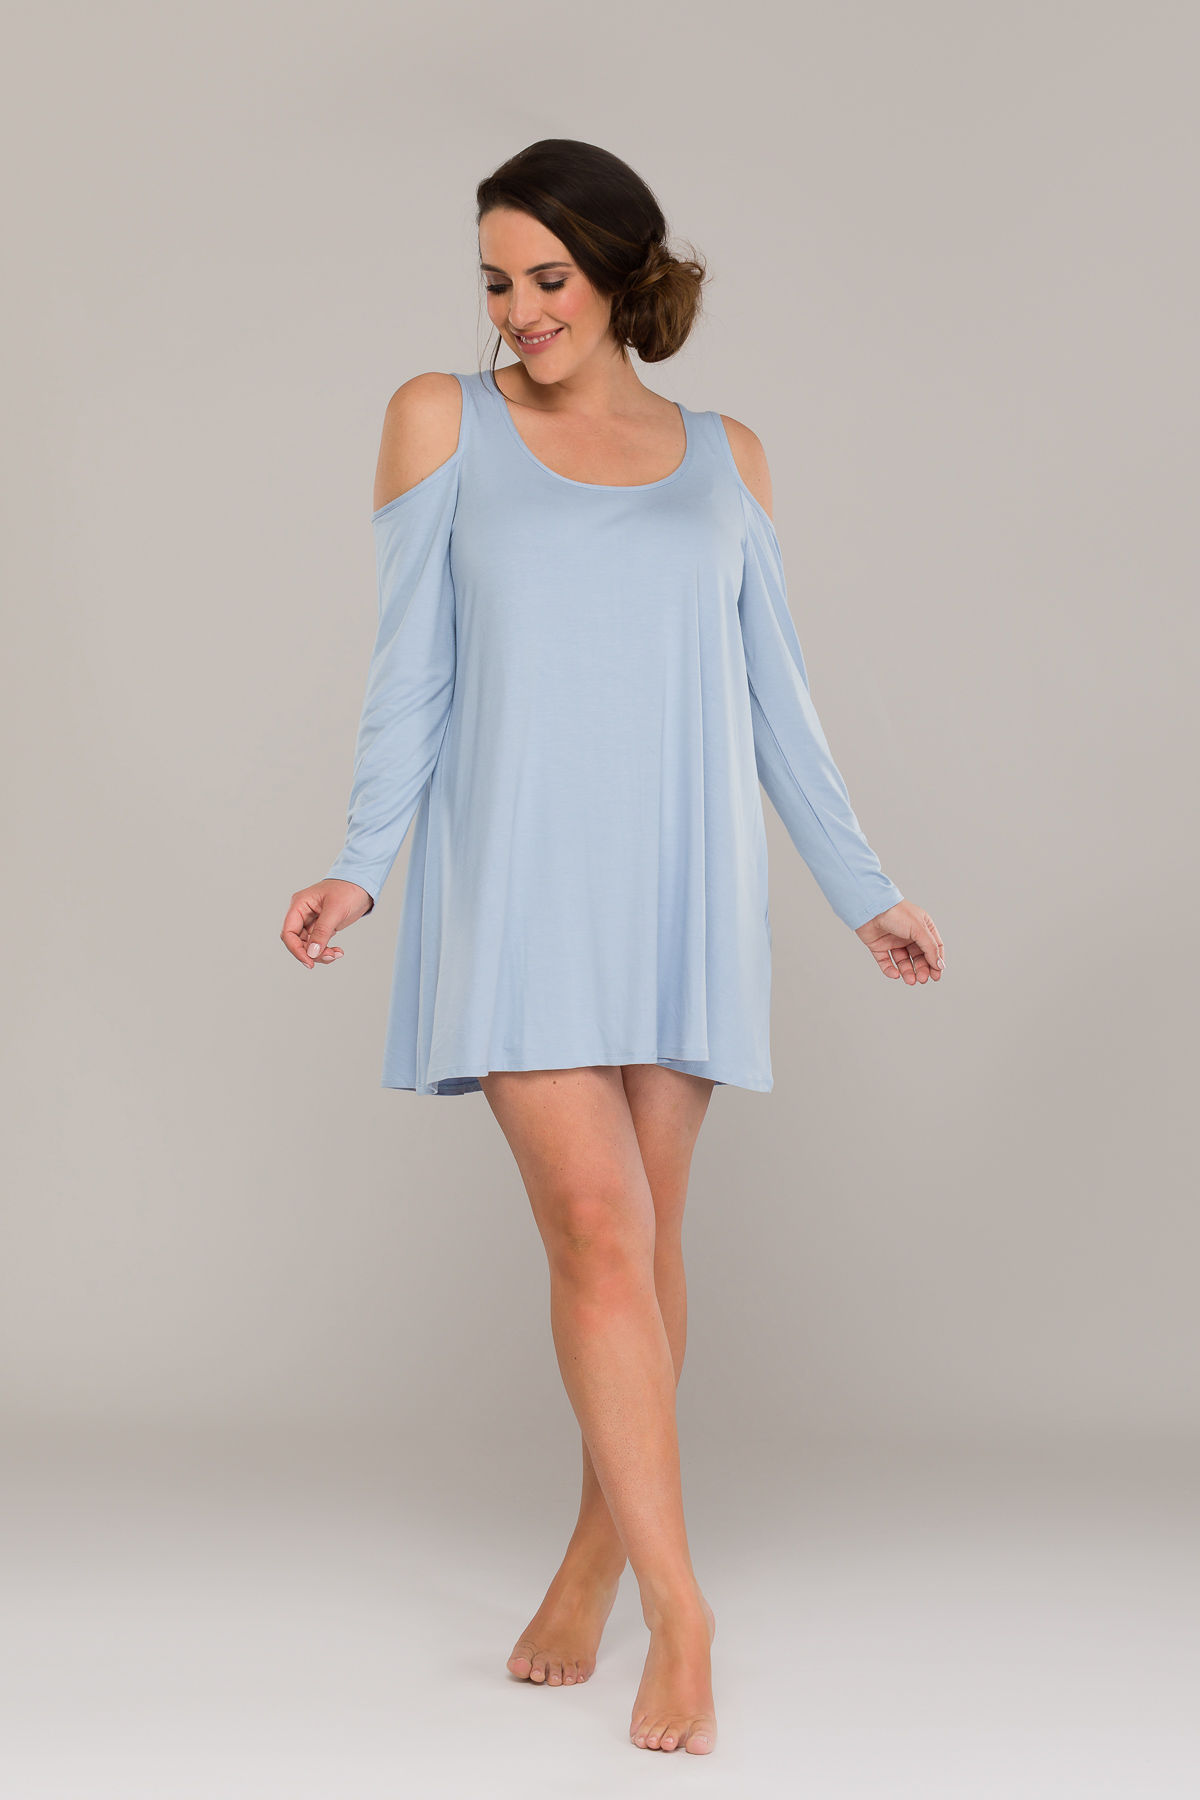 AURORA COLD SHOULDER DRESS LIGHT BLUE